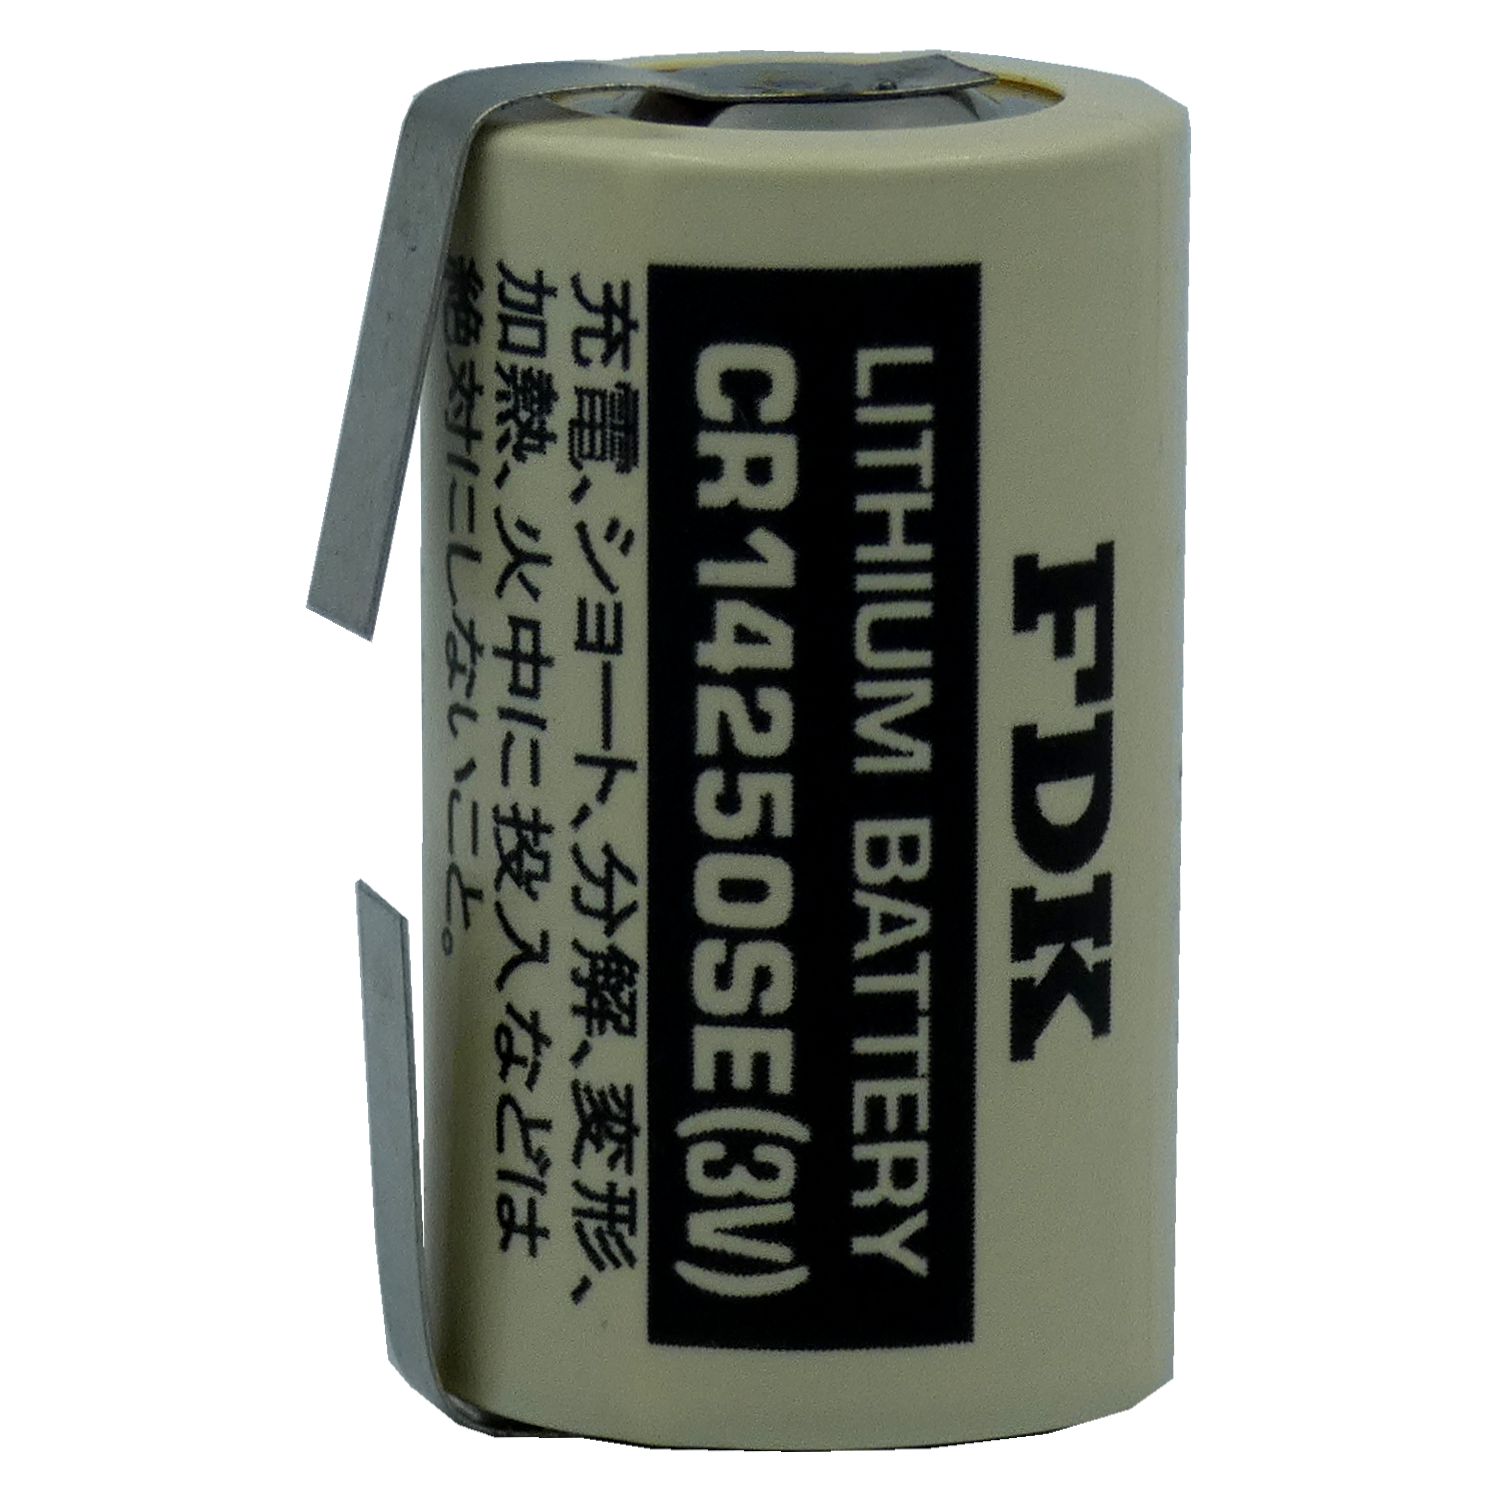 SANYO/FDK CR14250SE  Laser Lithium Batterie 3,0Volt mit Lötfahne in U-Form